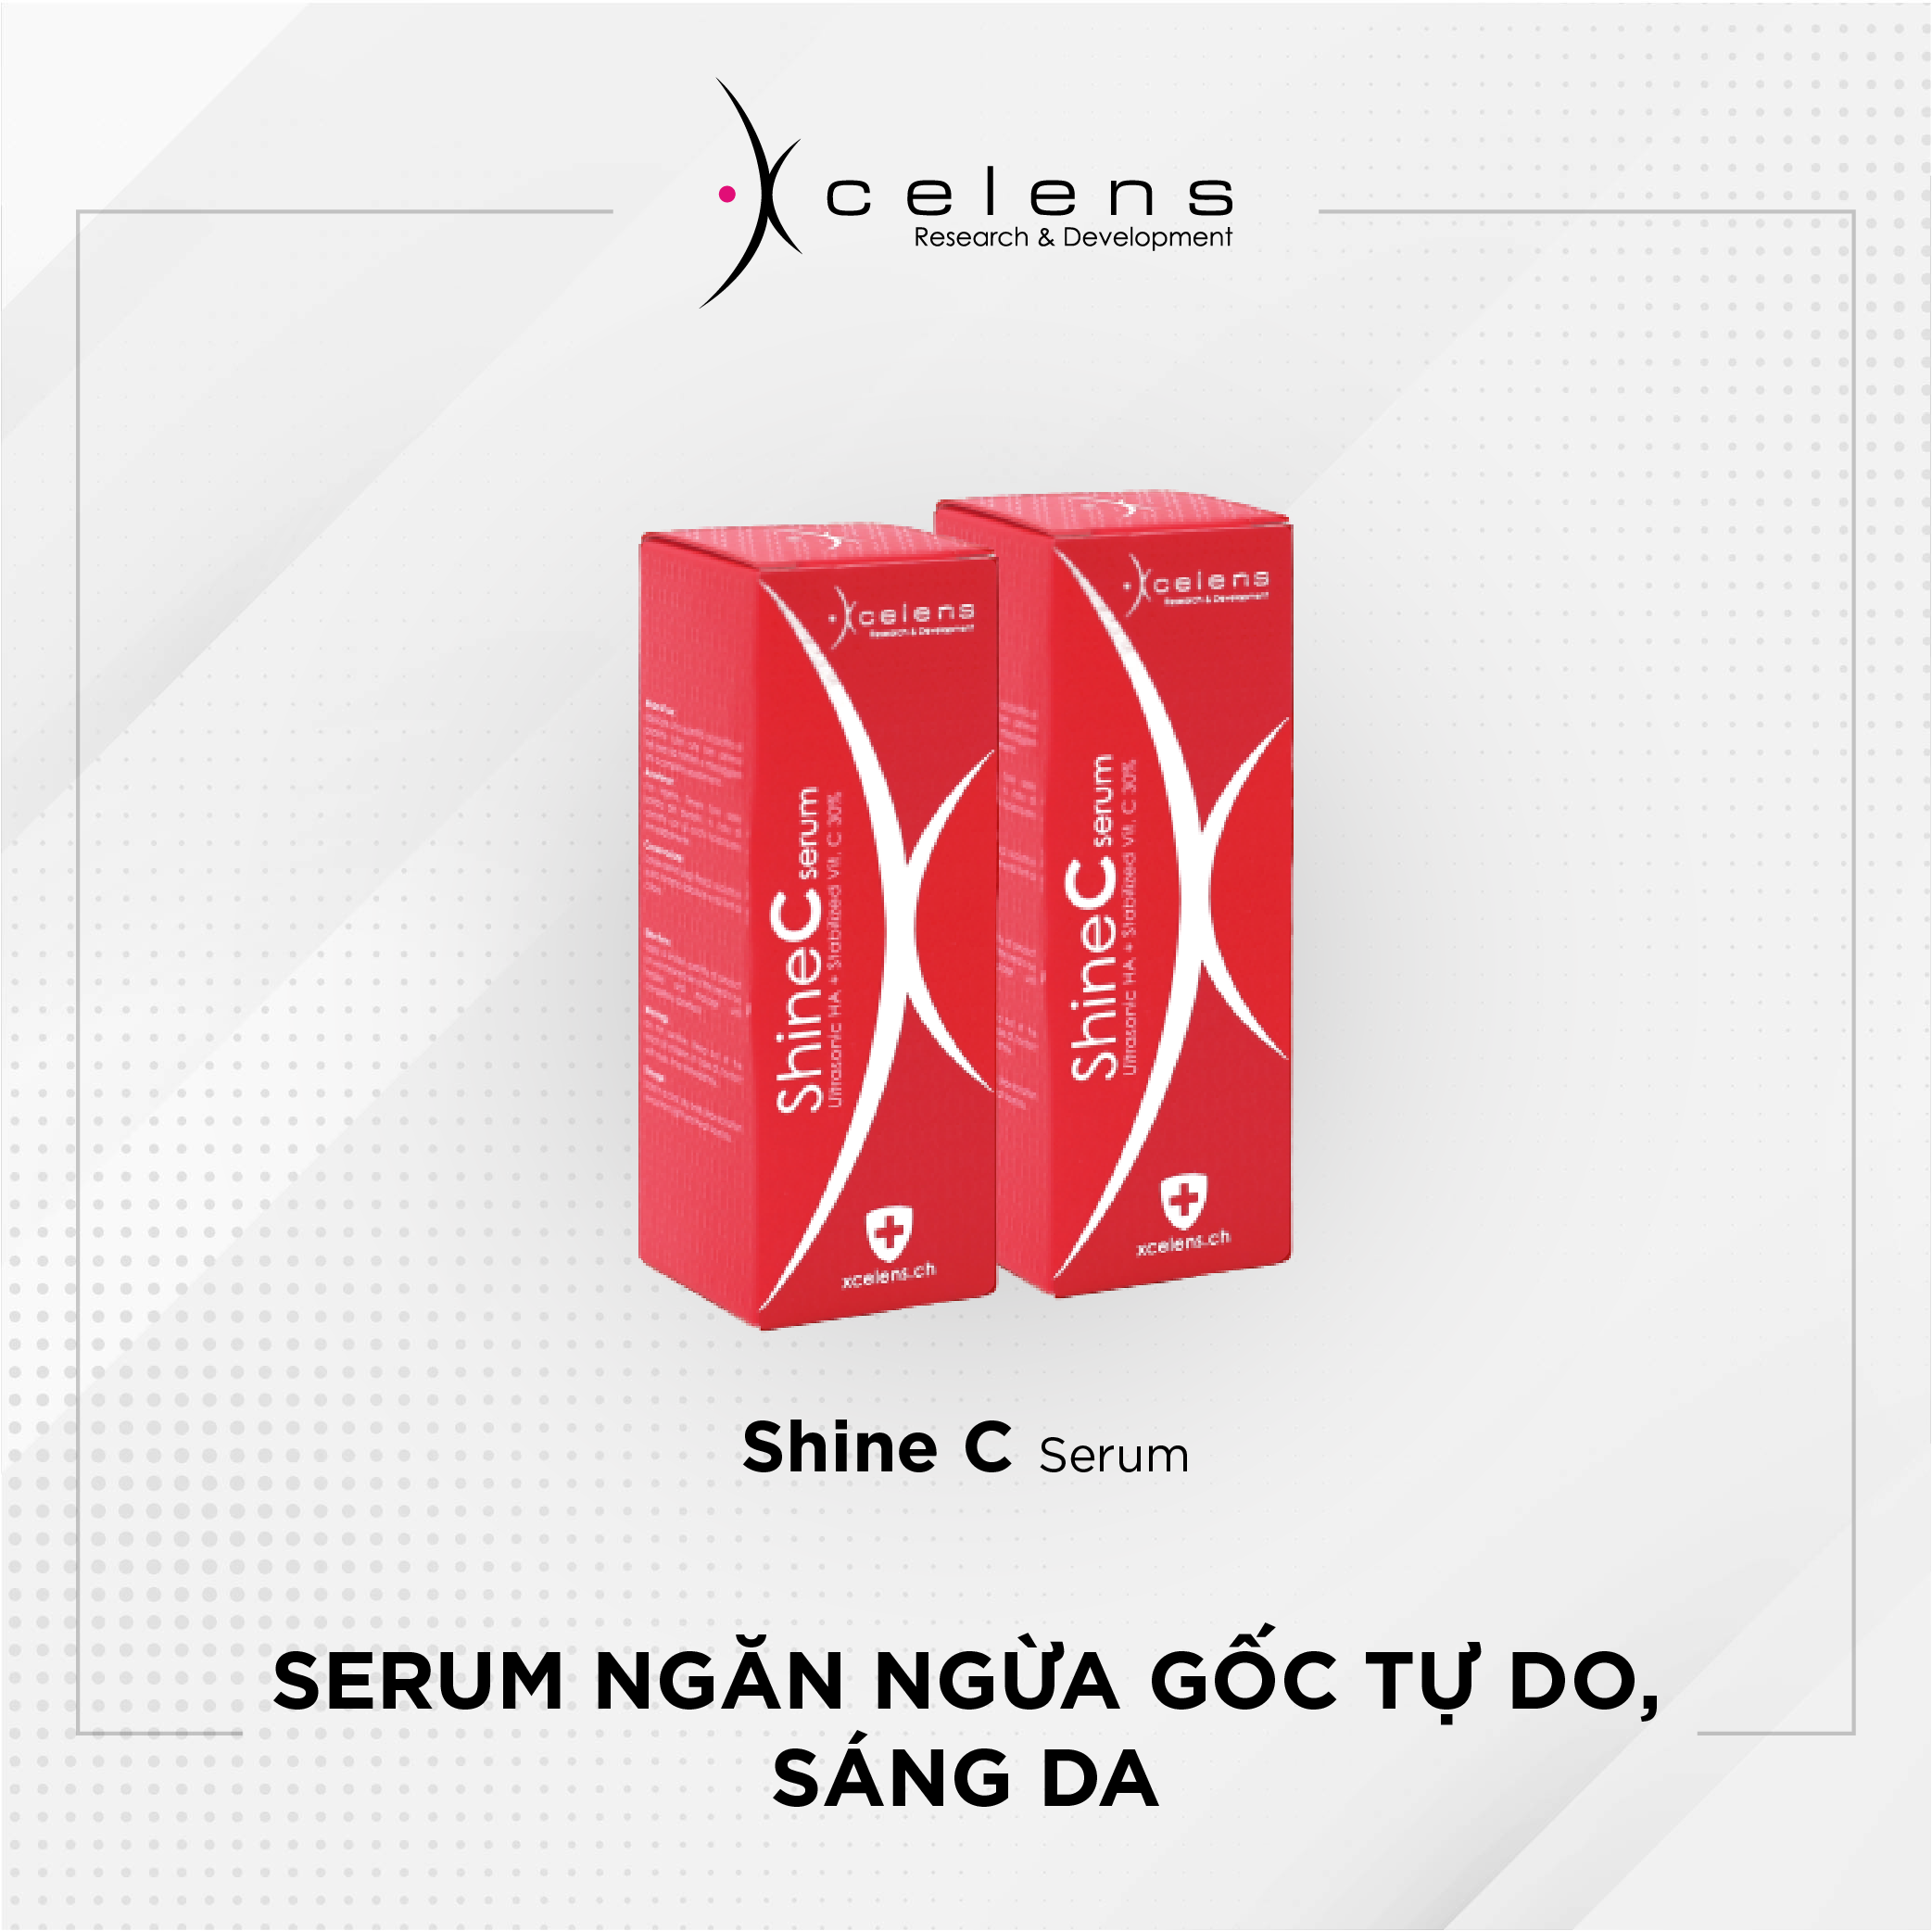 Shine C Serum – Serum ngăn ngừa gốc tự do, sáng da (Vitamin C 30%)